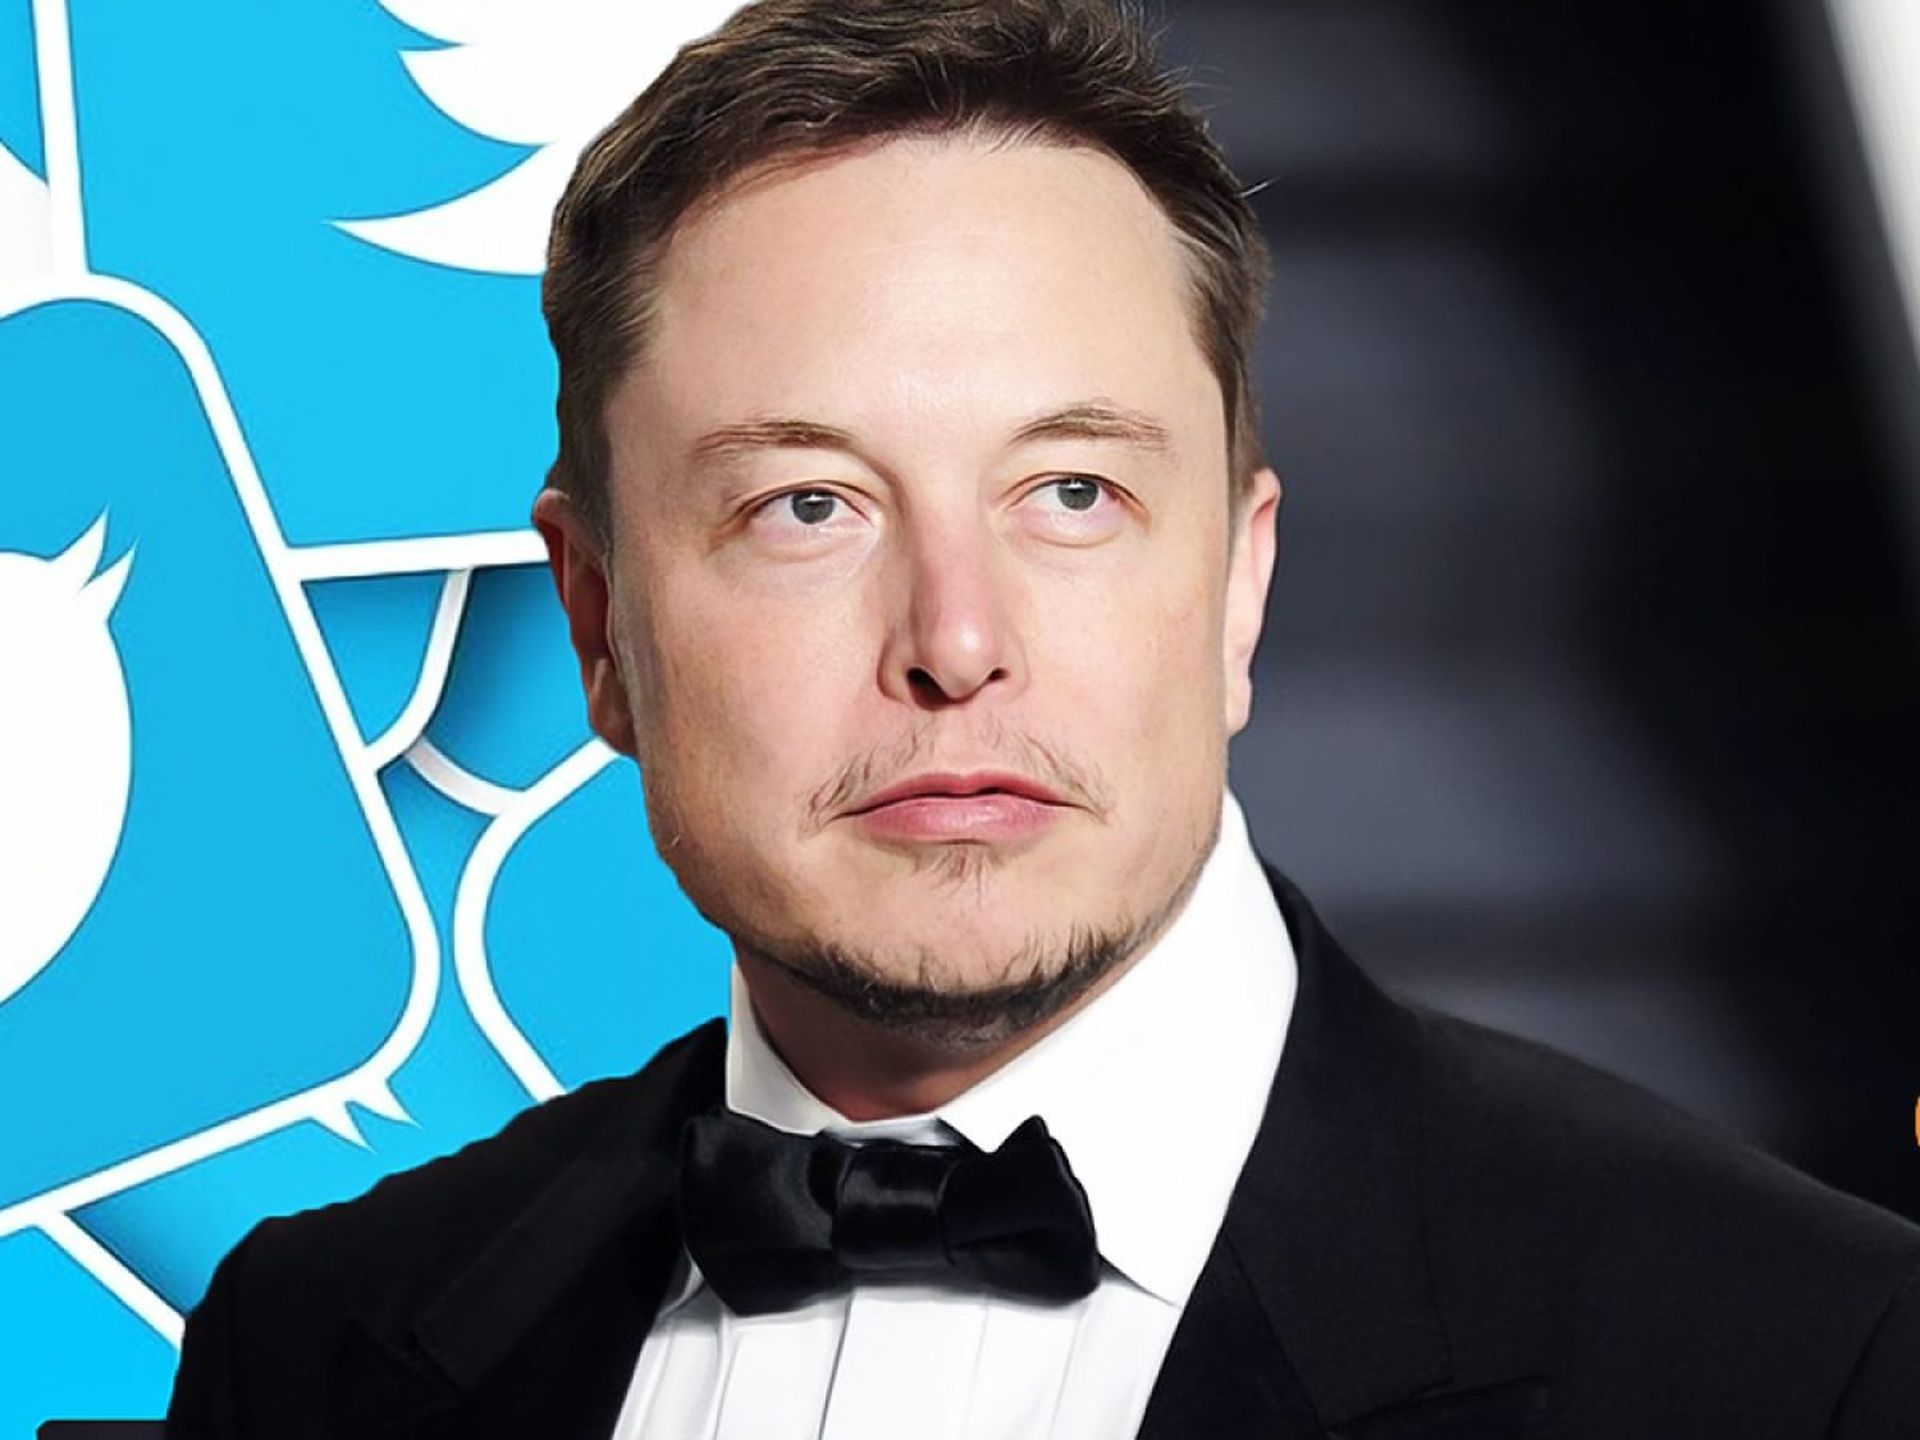 Il y a des rumeurs suggérant que Twitter a été vendu à Elon Musk, creusons dans les détails.